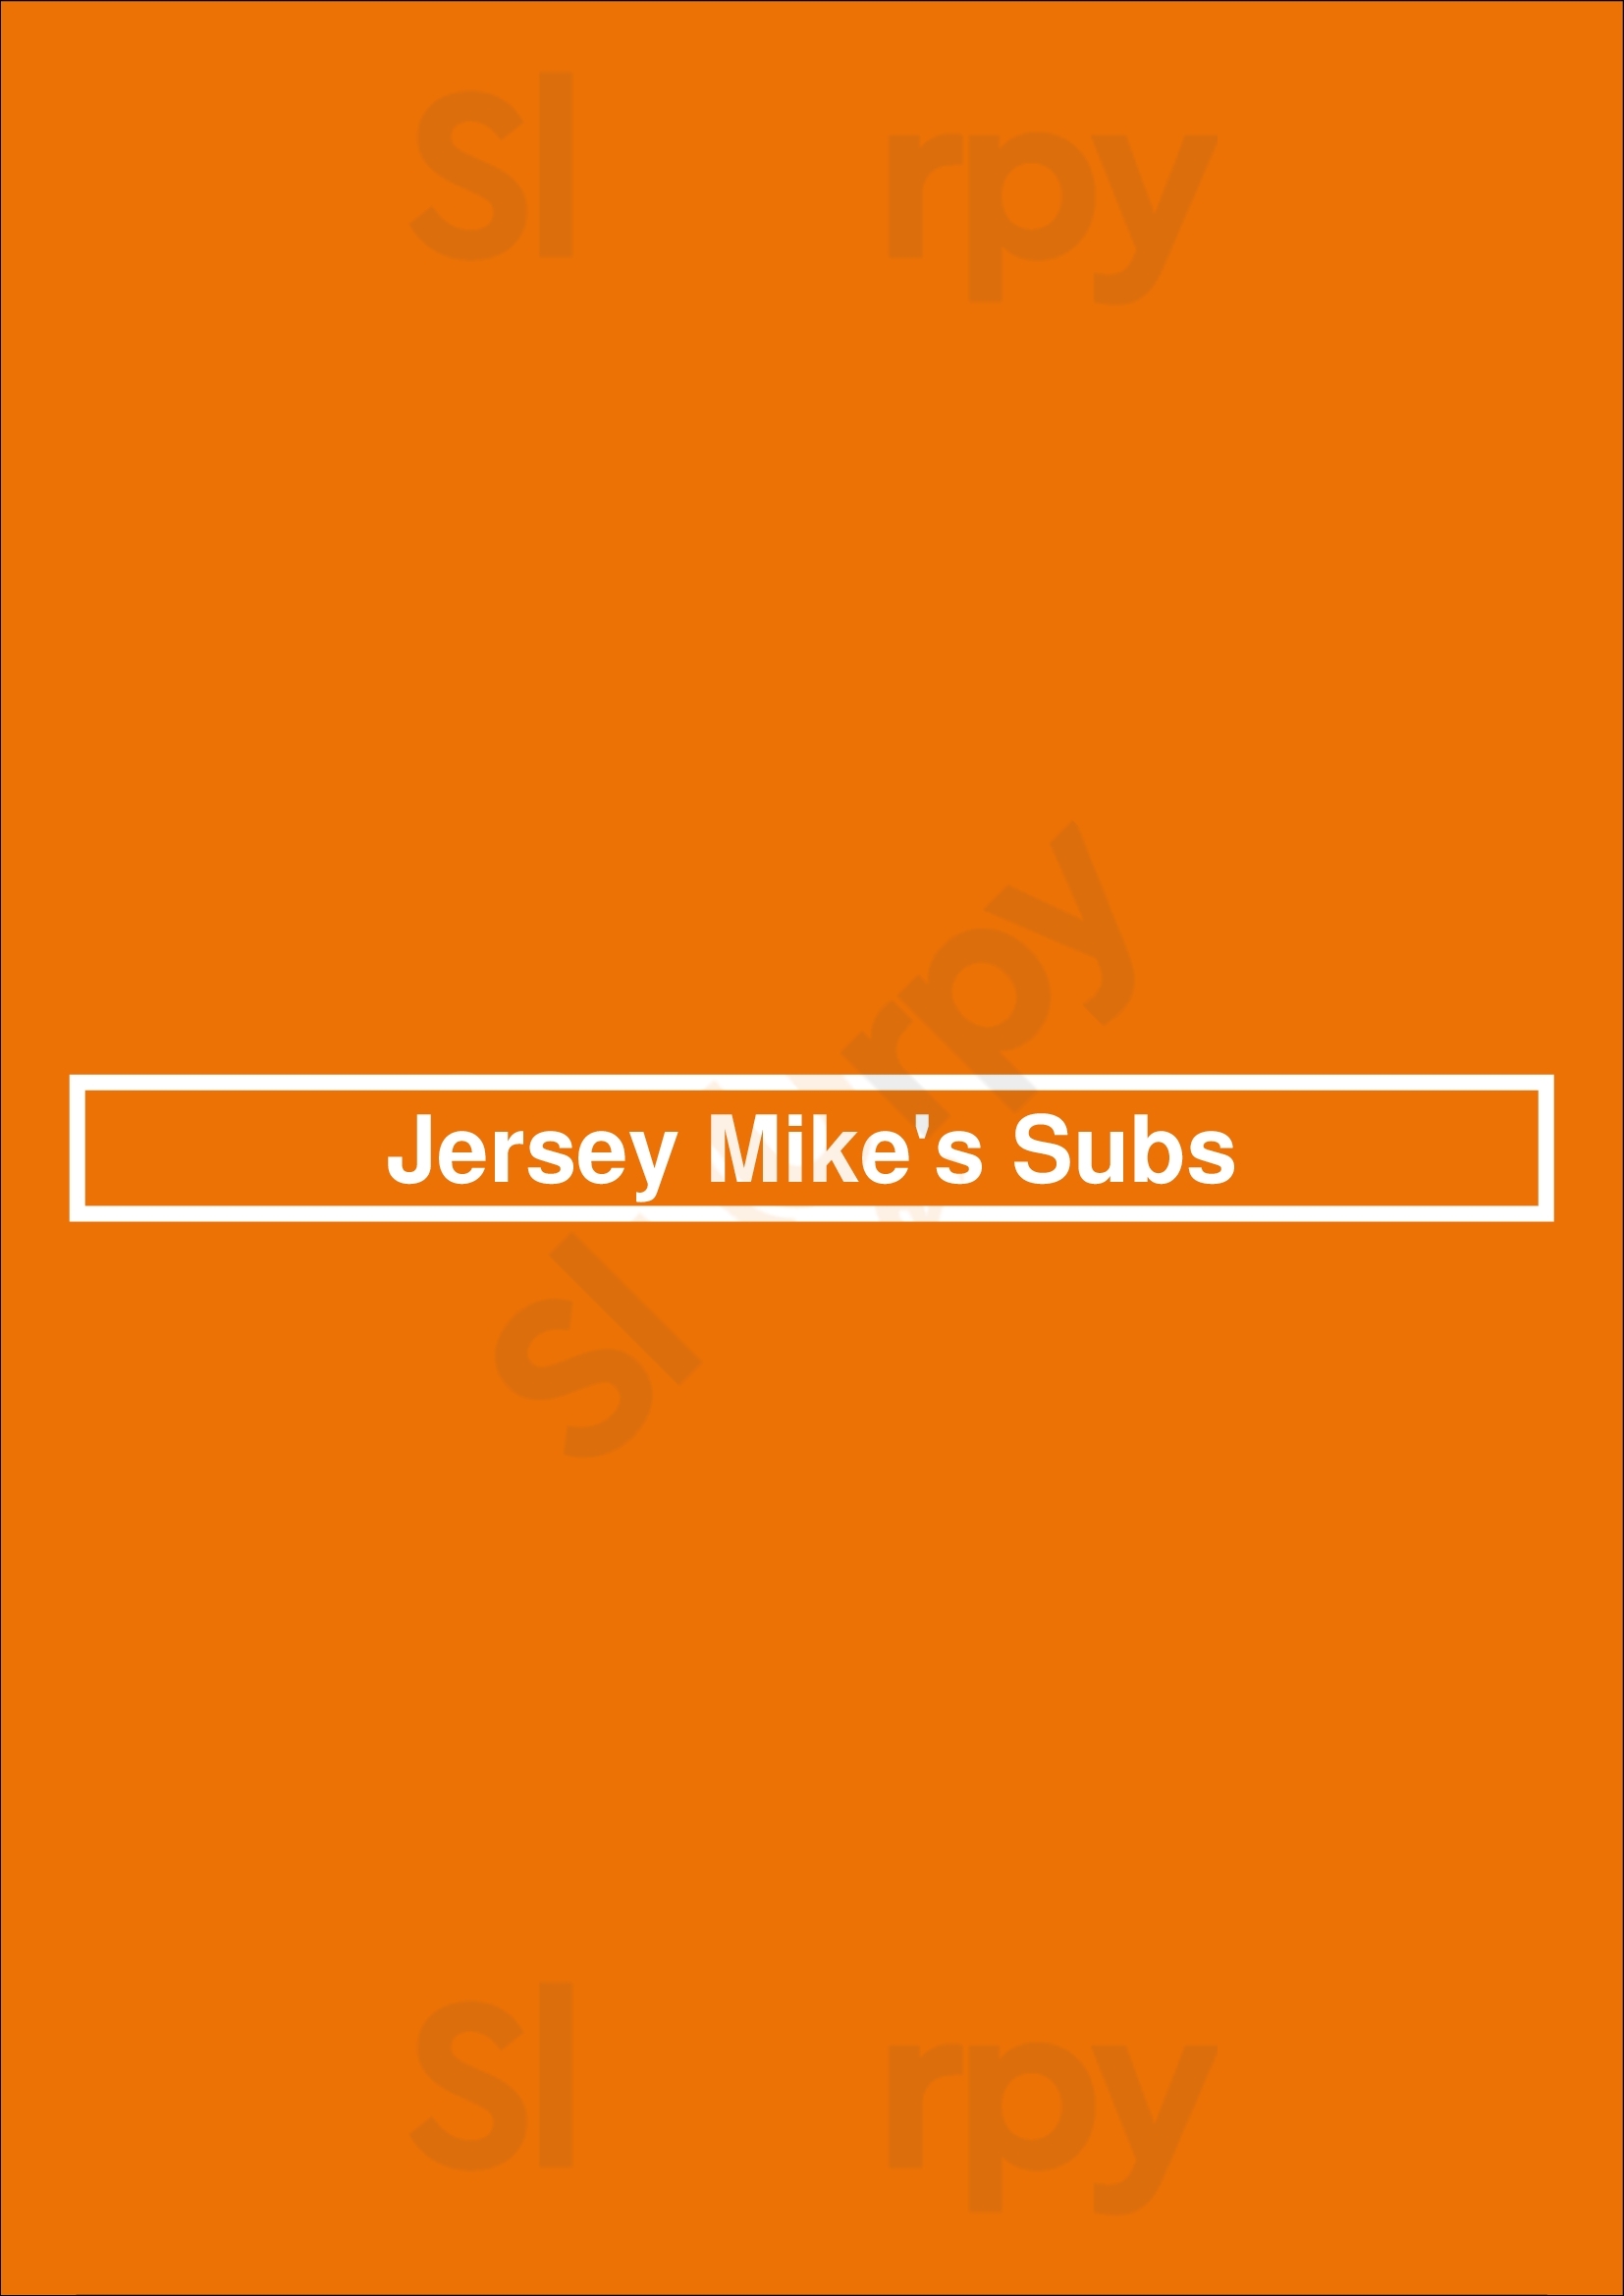 Jersey Mike's Subs Fresno Menu - 1